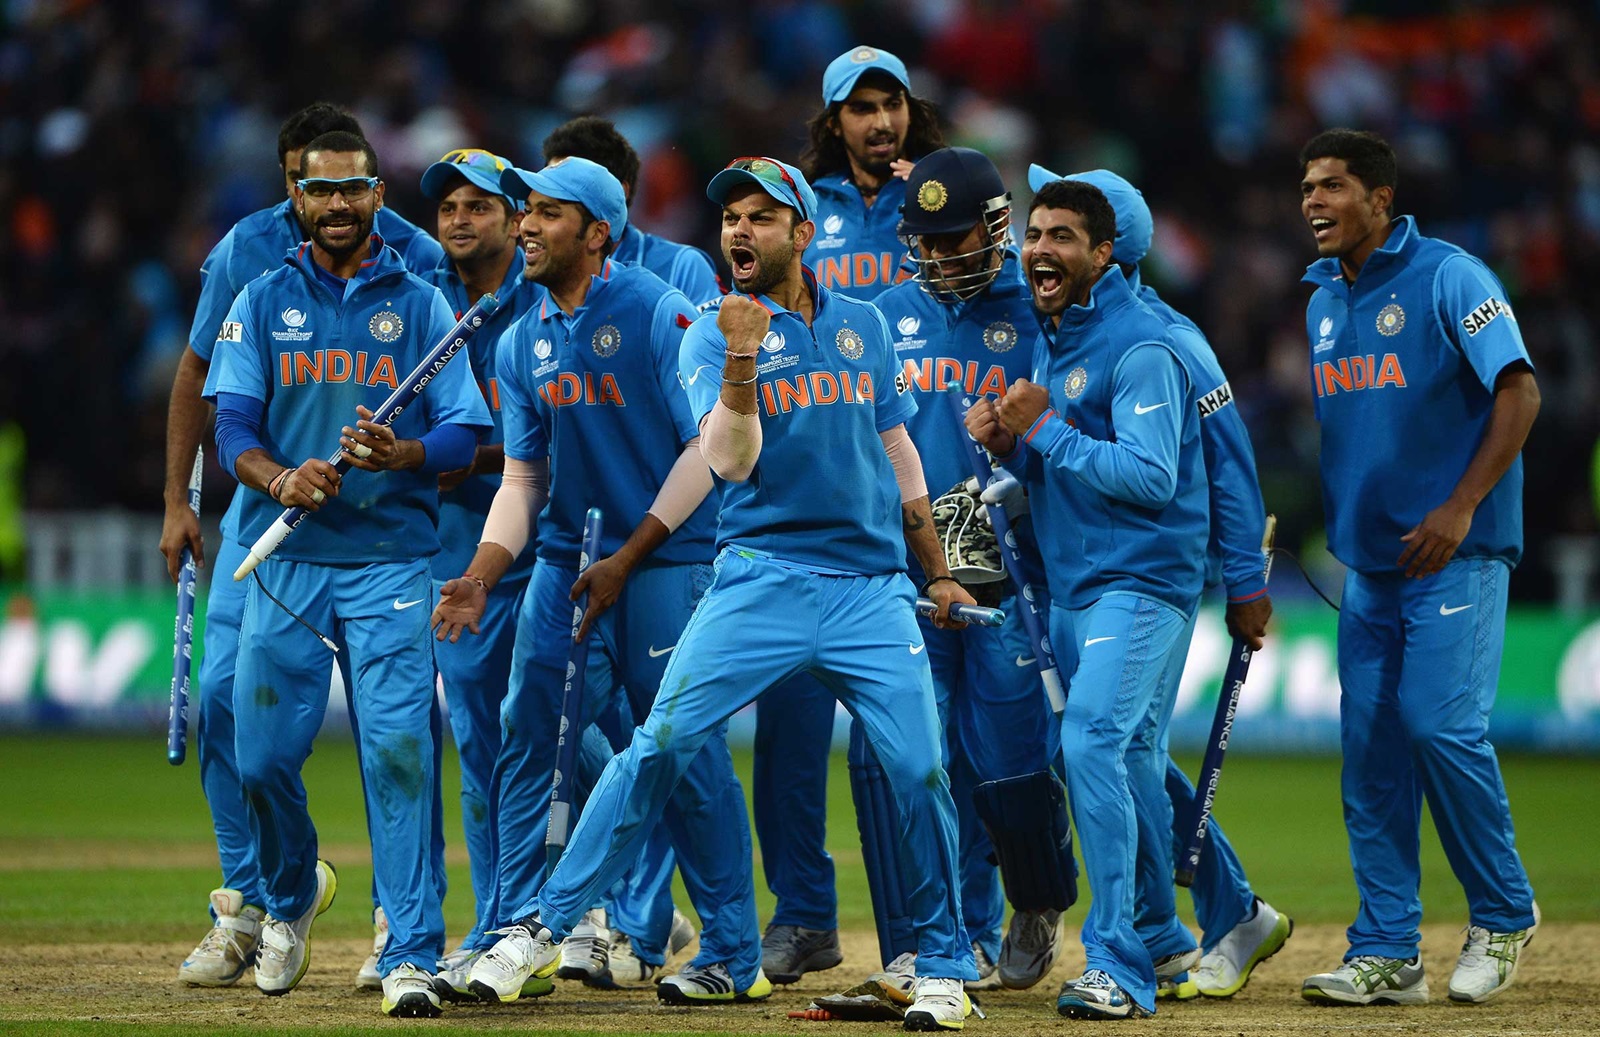 धर्मनिरपेक्ष अशा भारत देशात क्रिकेटला धर्म मानला जातो. भारतात मोठ्या प्रमाणावर क्रिकेटप्रेमी आहेत.